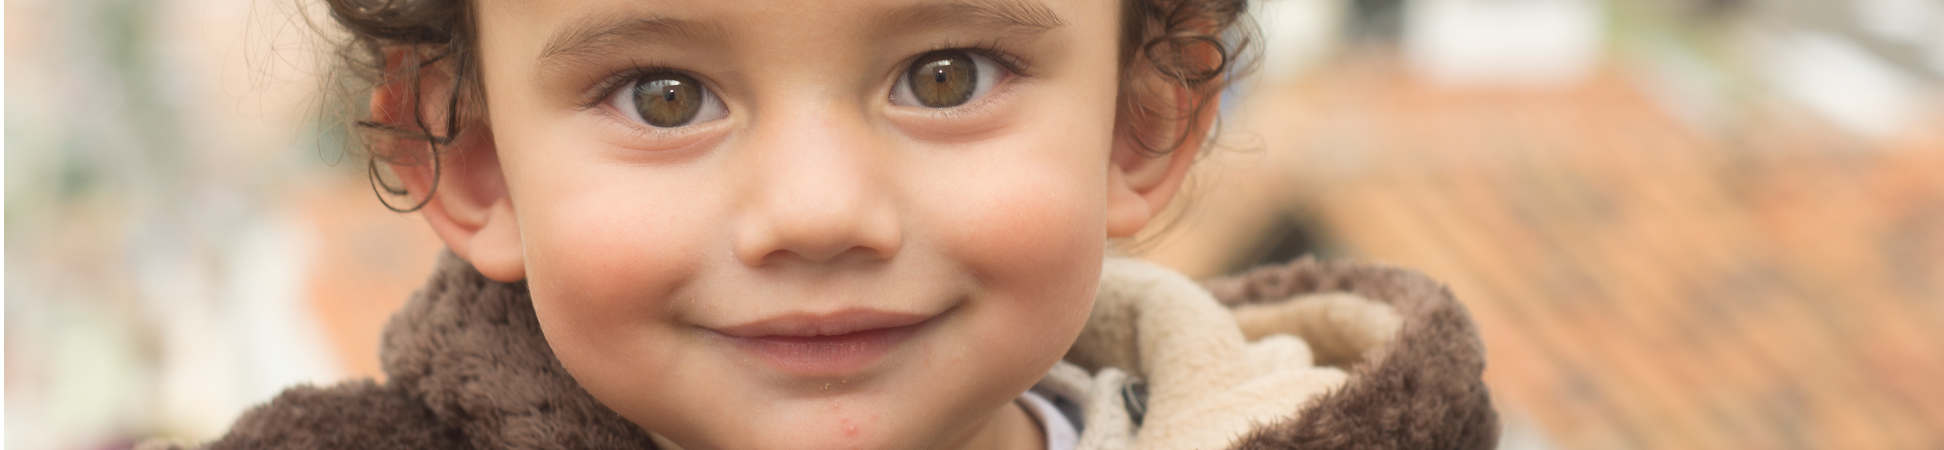 Fotografía del rostro de un niño